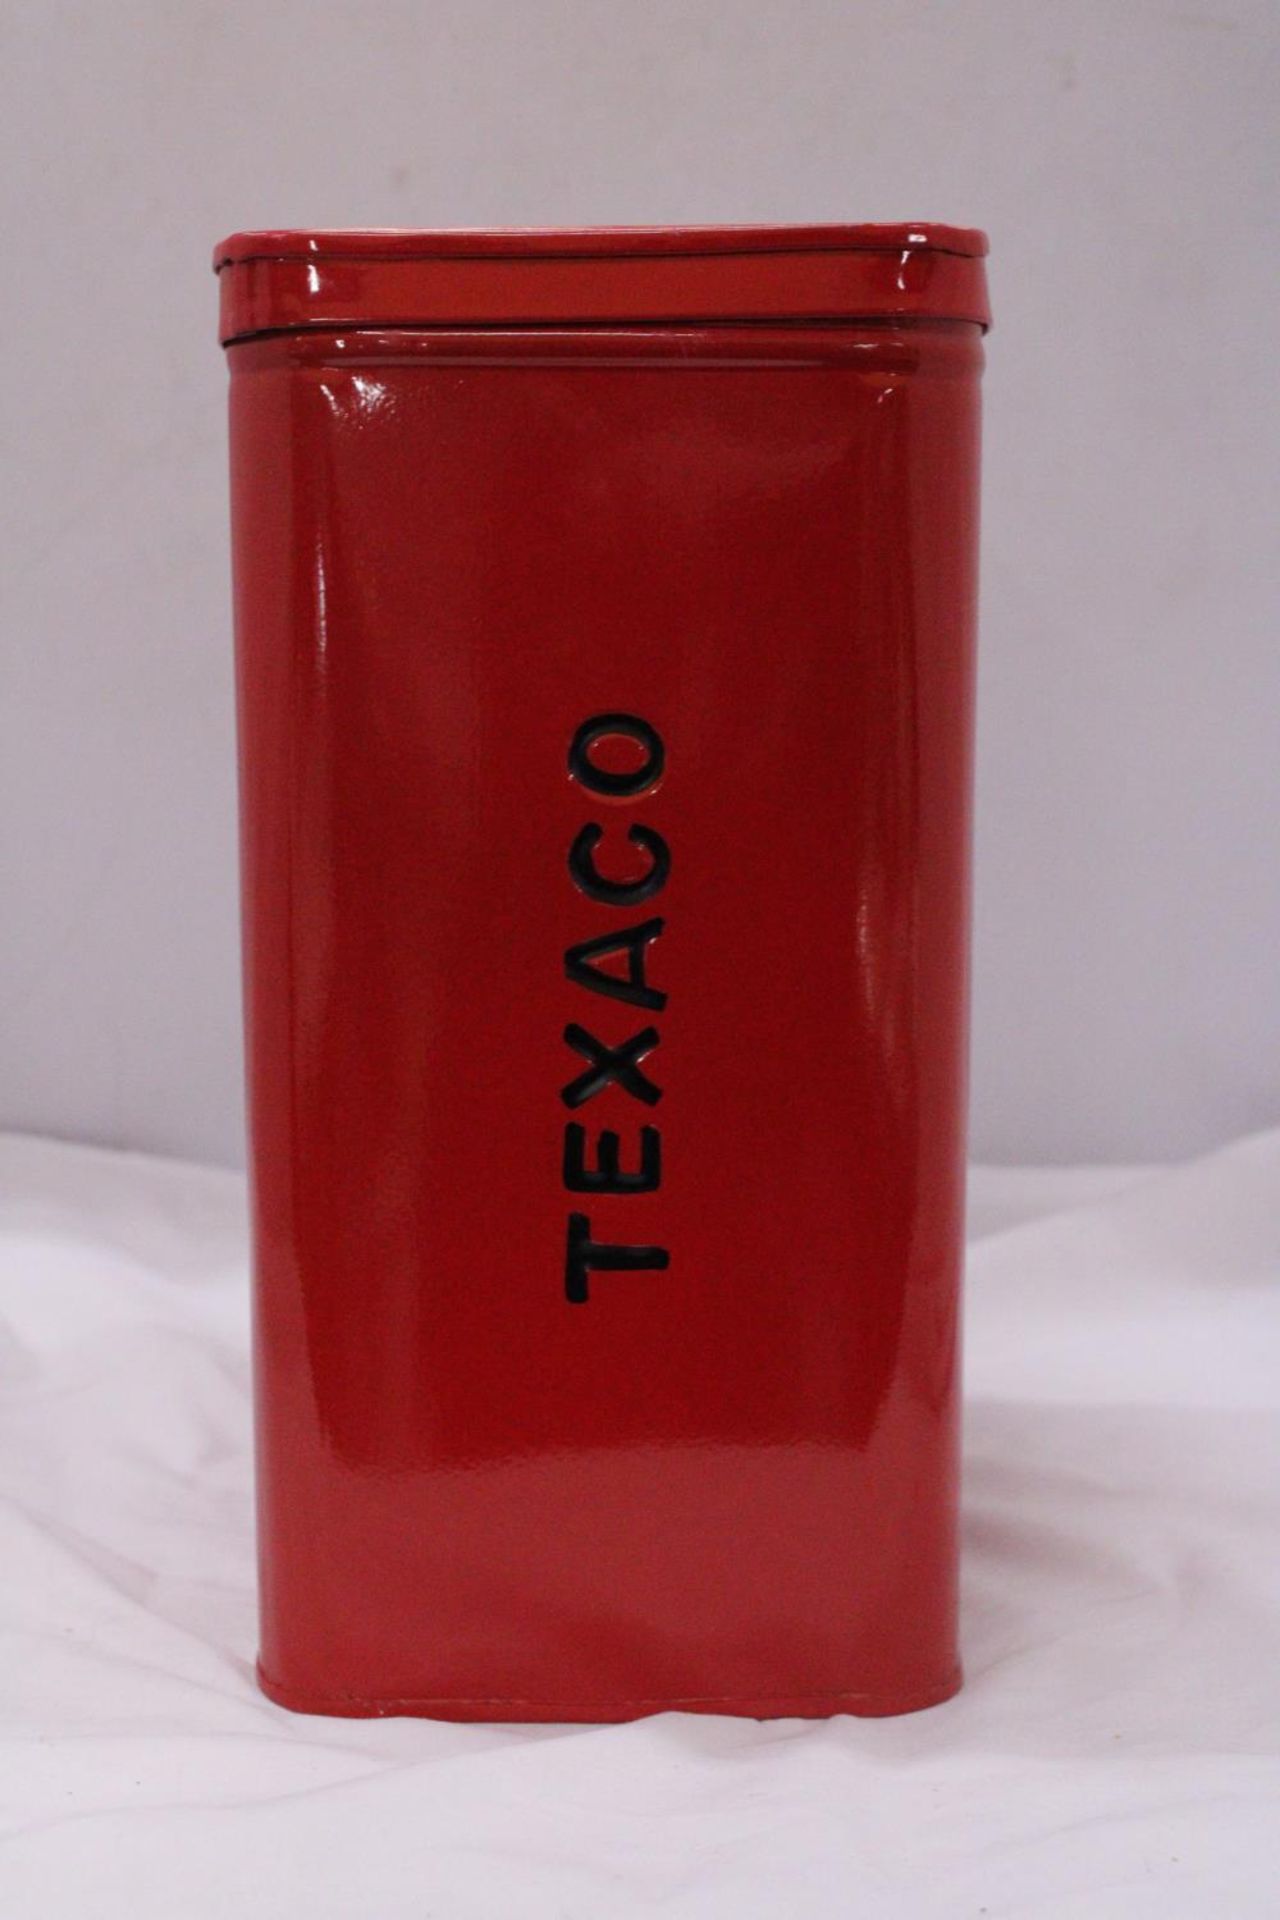 A RED 'TEXACO' STORAGE TIN - Image 4 of 4